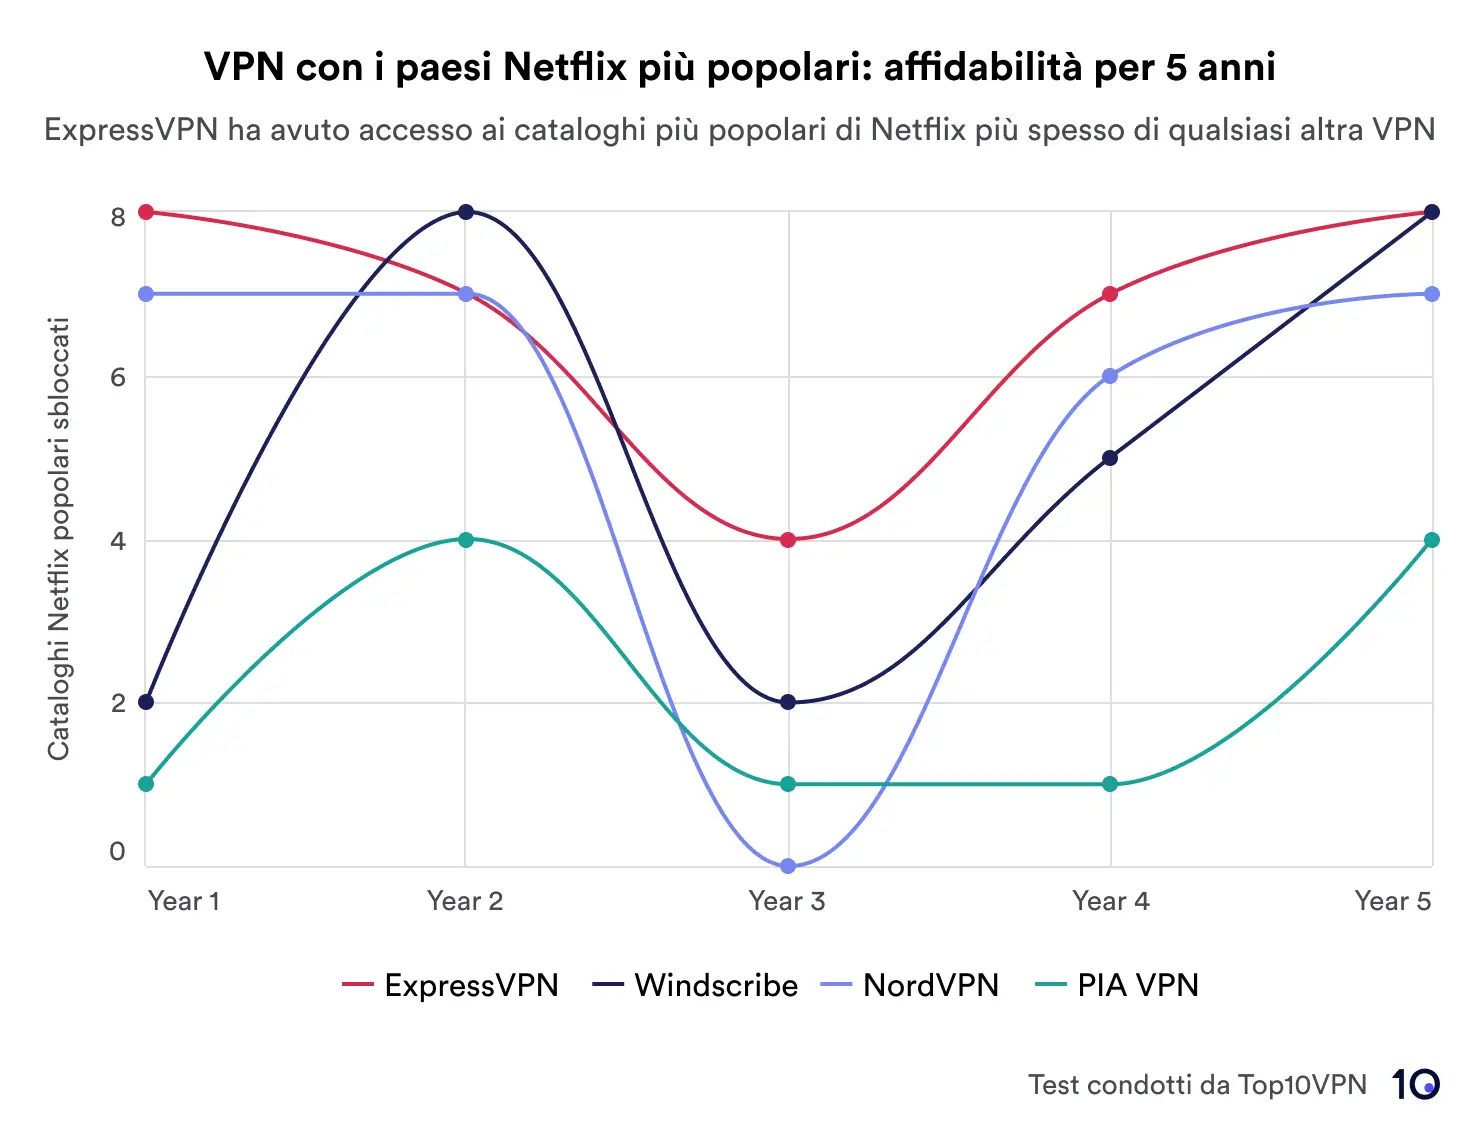 Un grafico a linee che mostra le prestazioni di quattro VPN (ExpressVPN, Windscribe, NordVPN e PIA VPN) nello sblocco delle regioni Netflix in cinque anni. ExpressVPN è leader in termini di affidabilità.